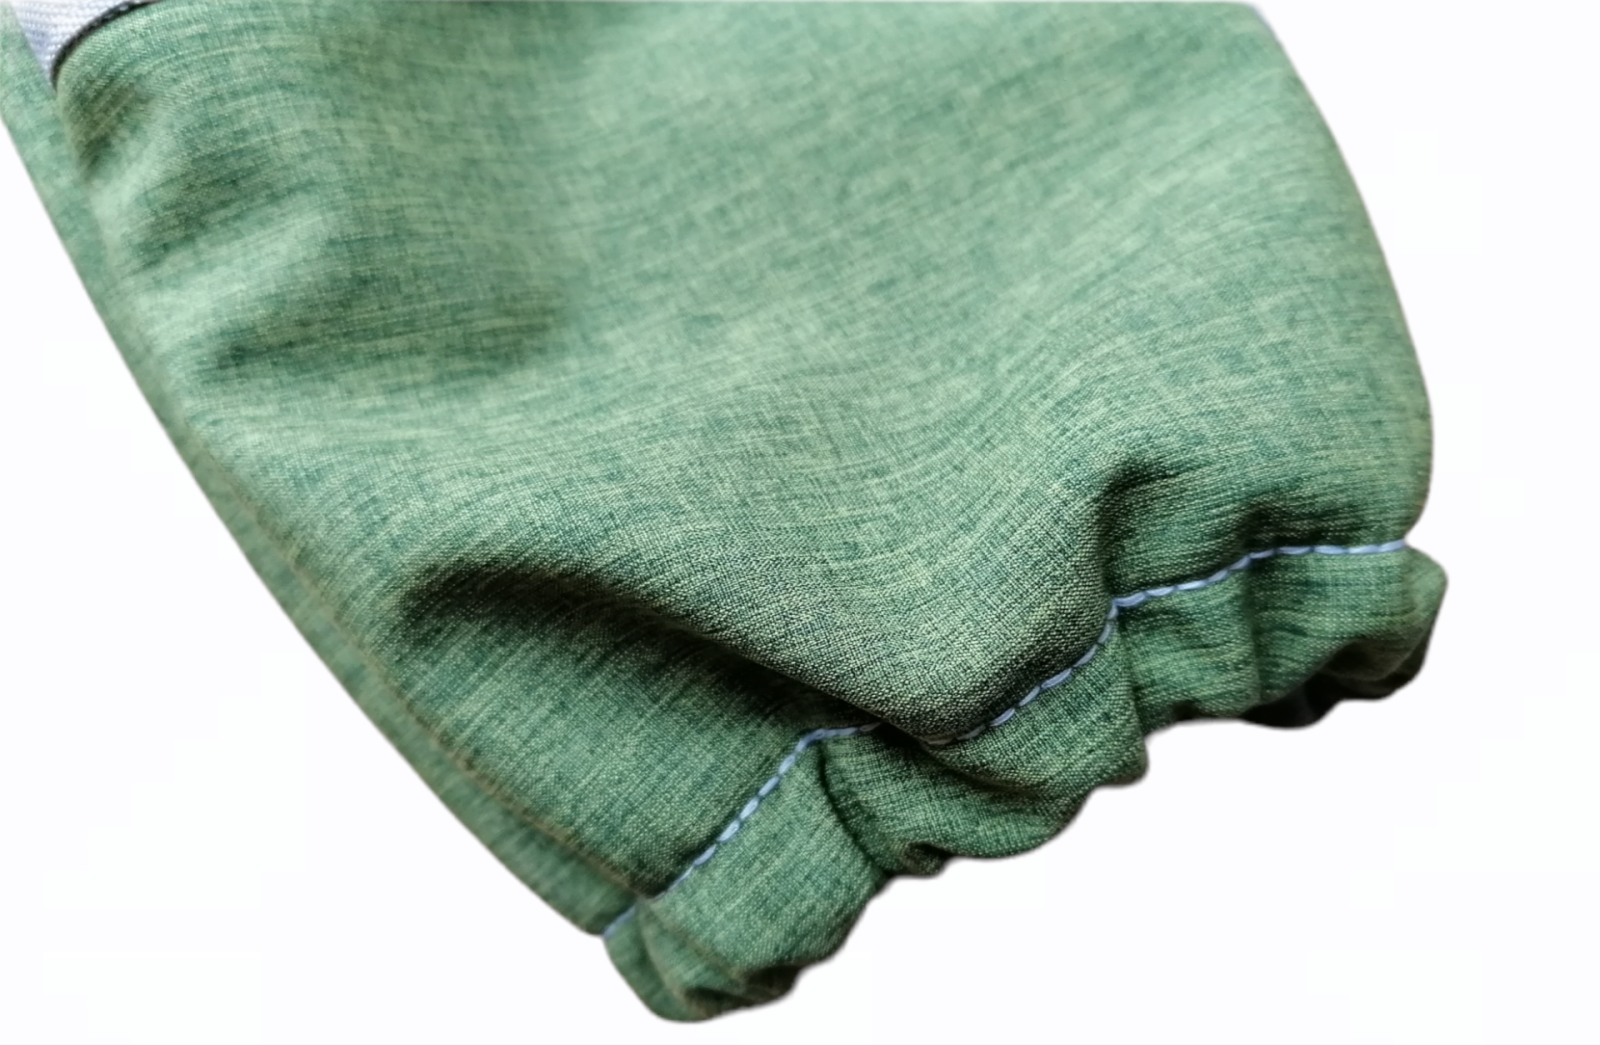 Softshellhose für Babys und Kinder mit Cordura-Belegen an Knie und Po Grün-meliert Grau ideal für